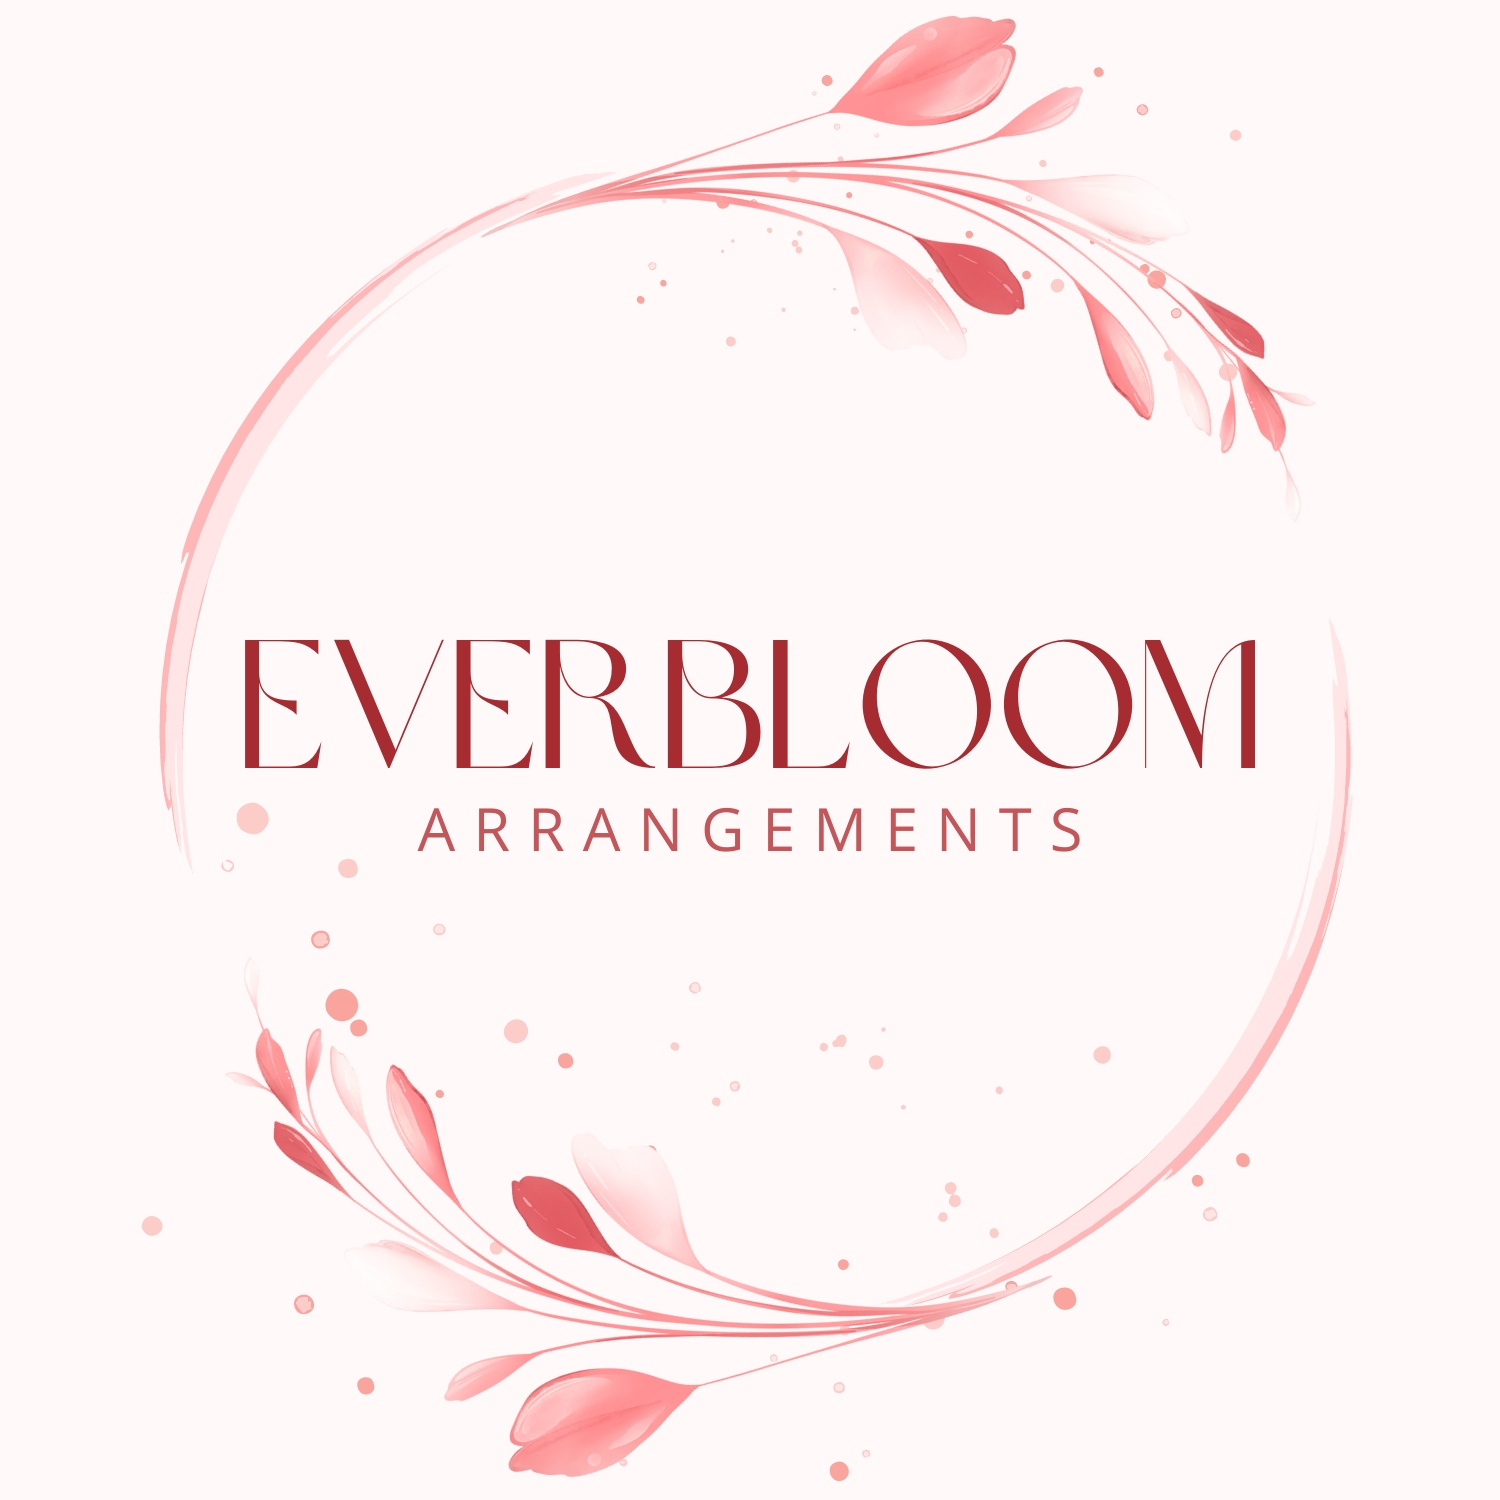 Everbloom Arrangements